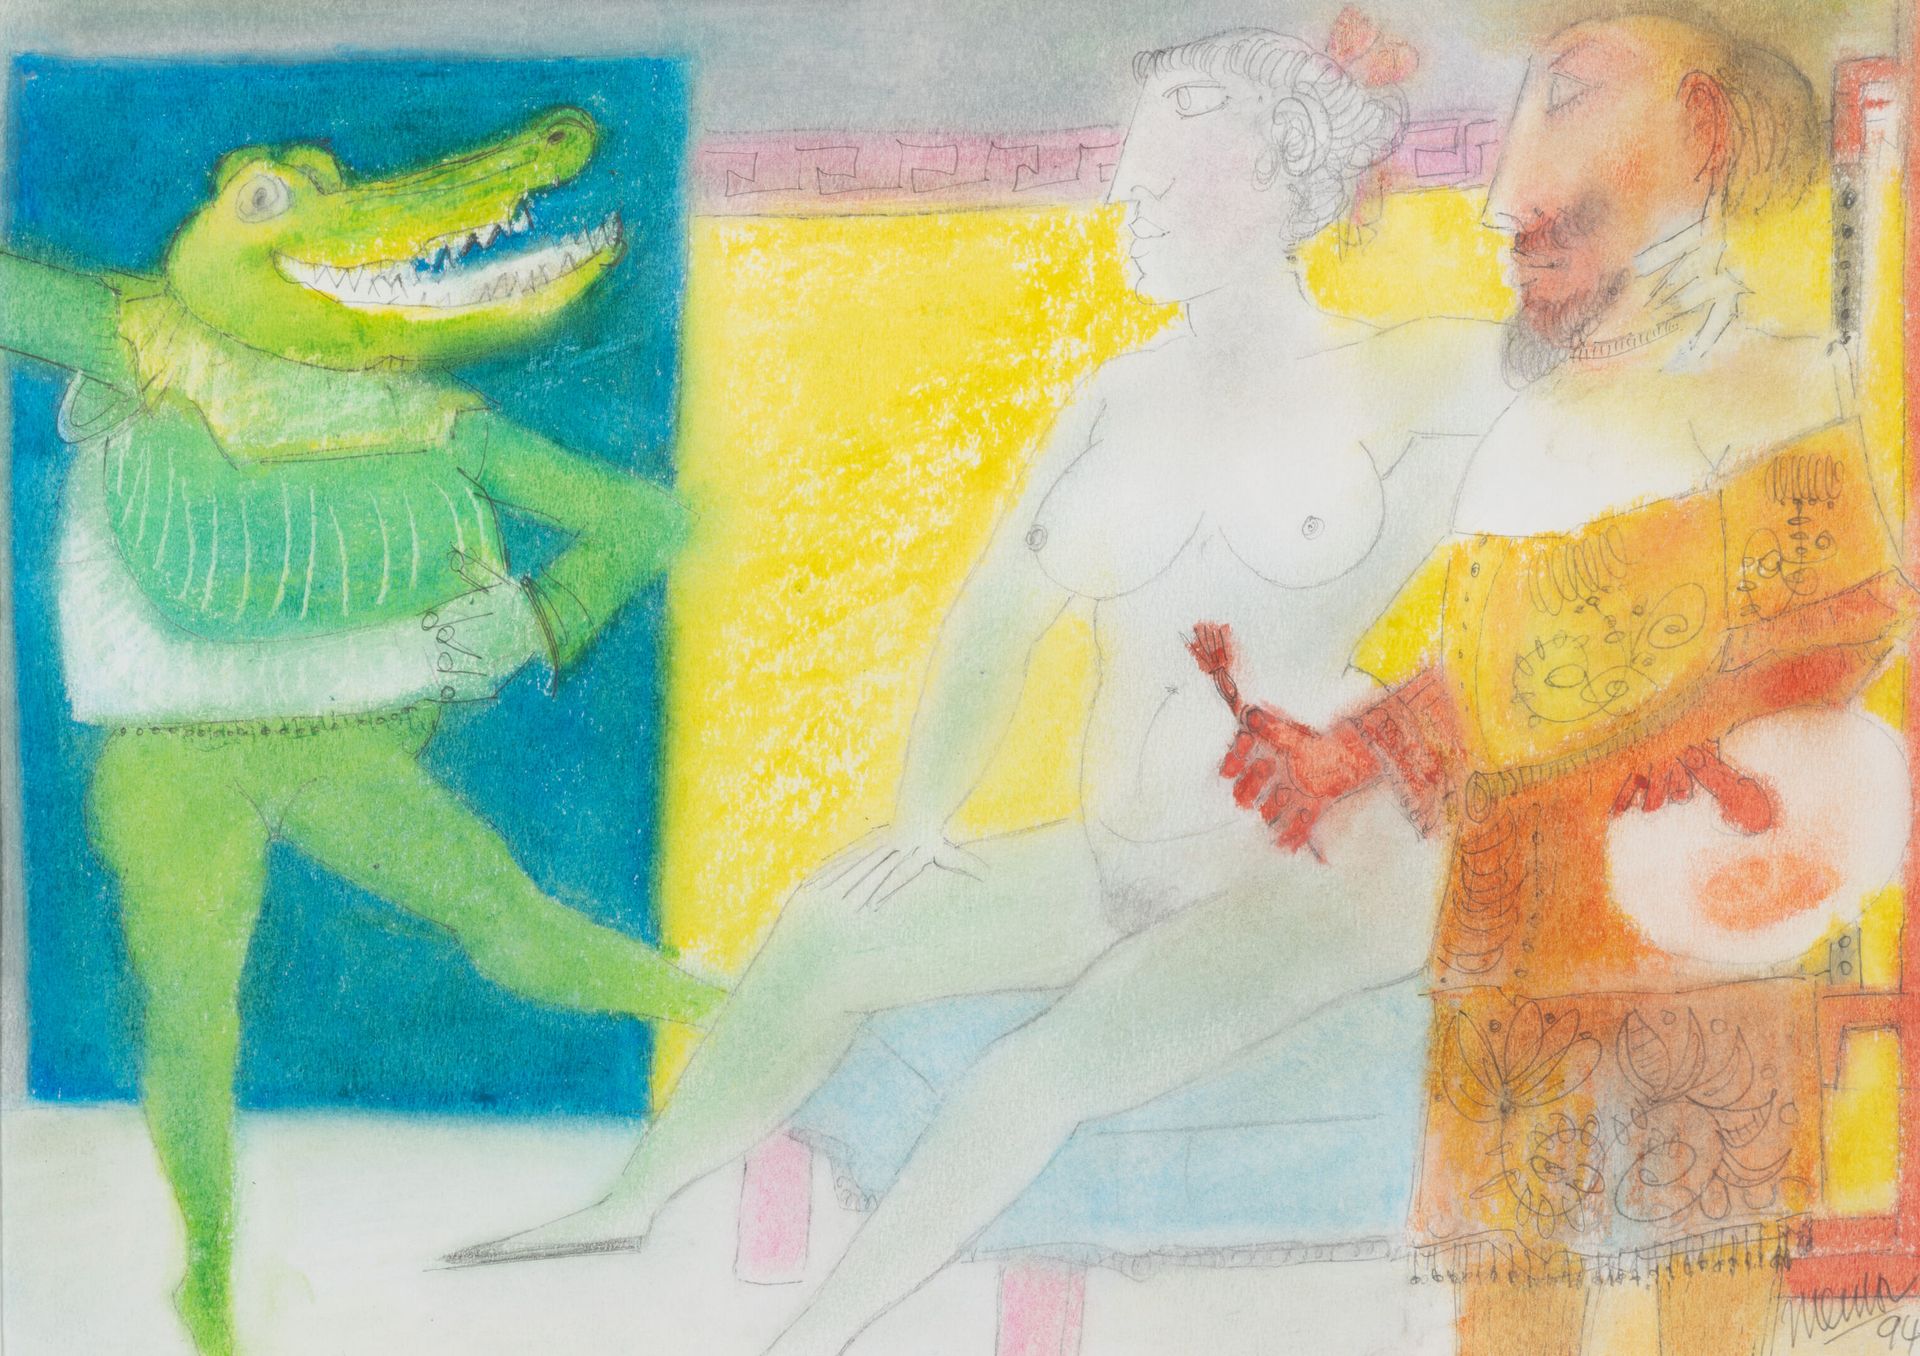 Blasco MENTOR (1919-2003) Le peintre et ses modèles, 1994.
Crayons de couleurs s&hellip;